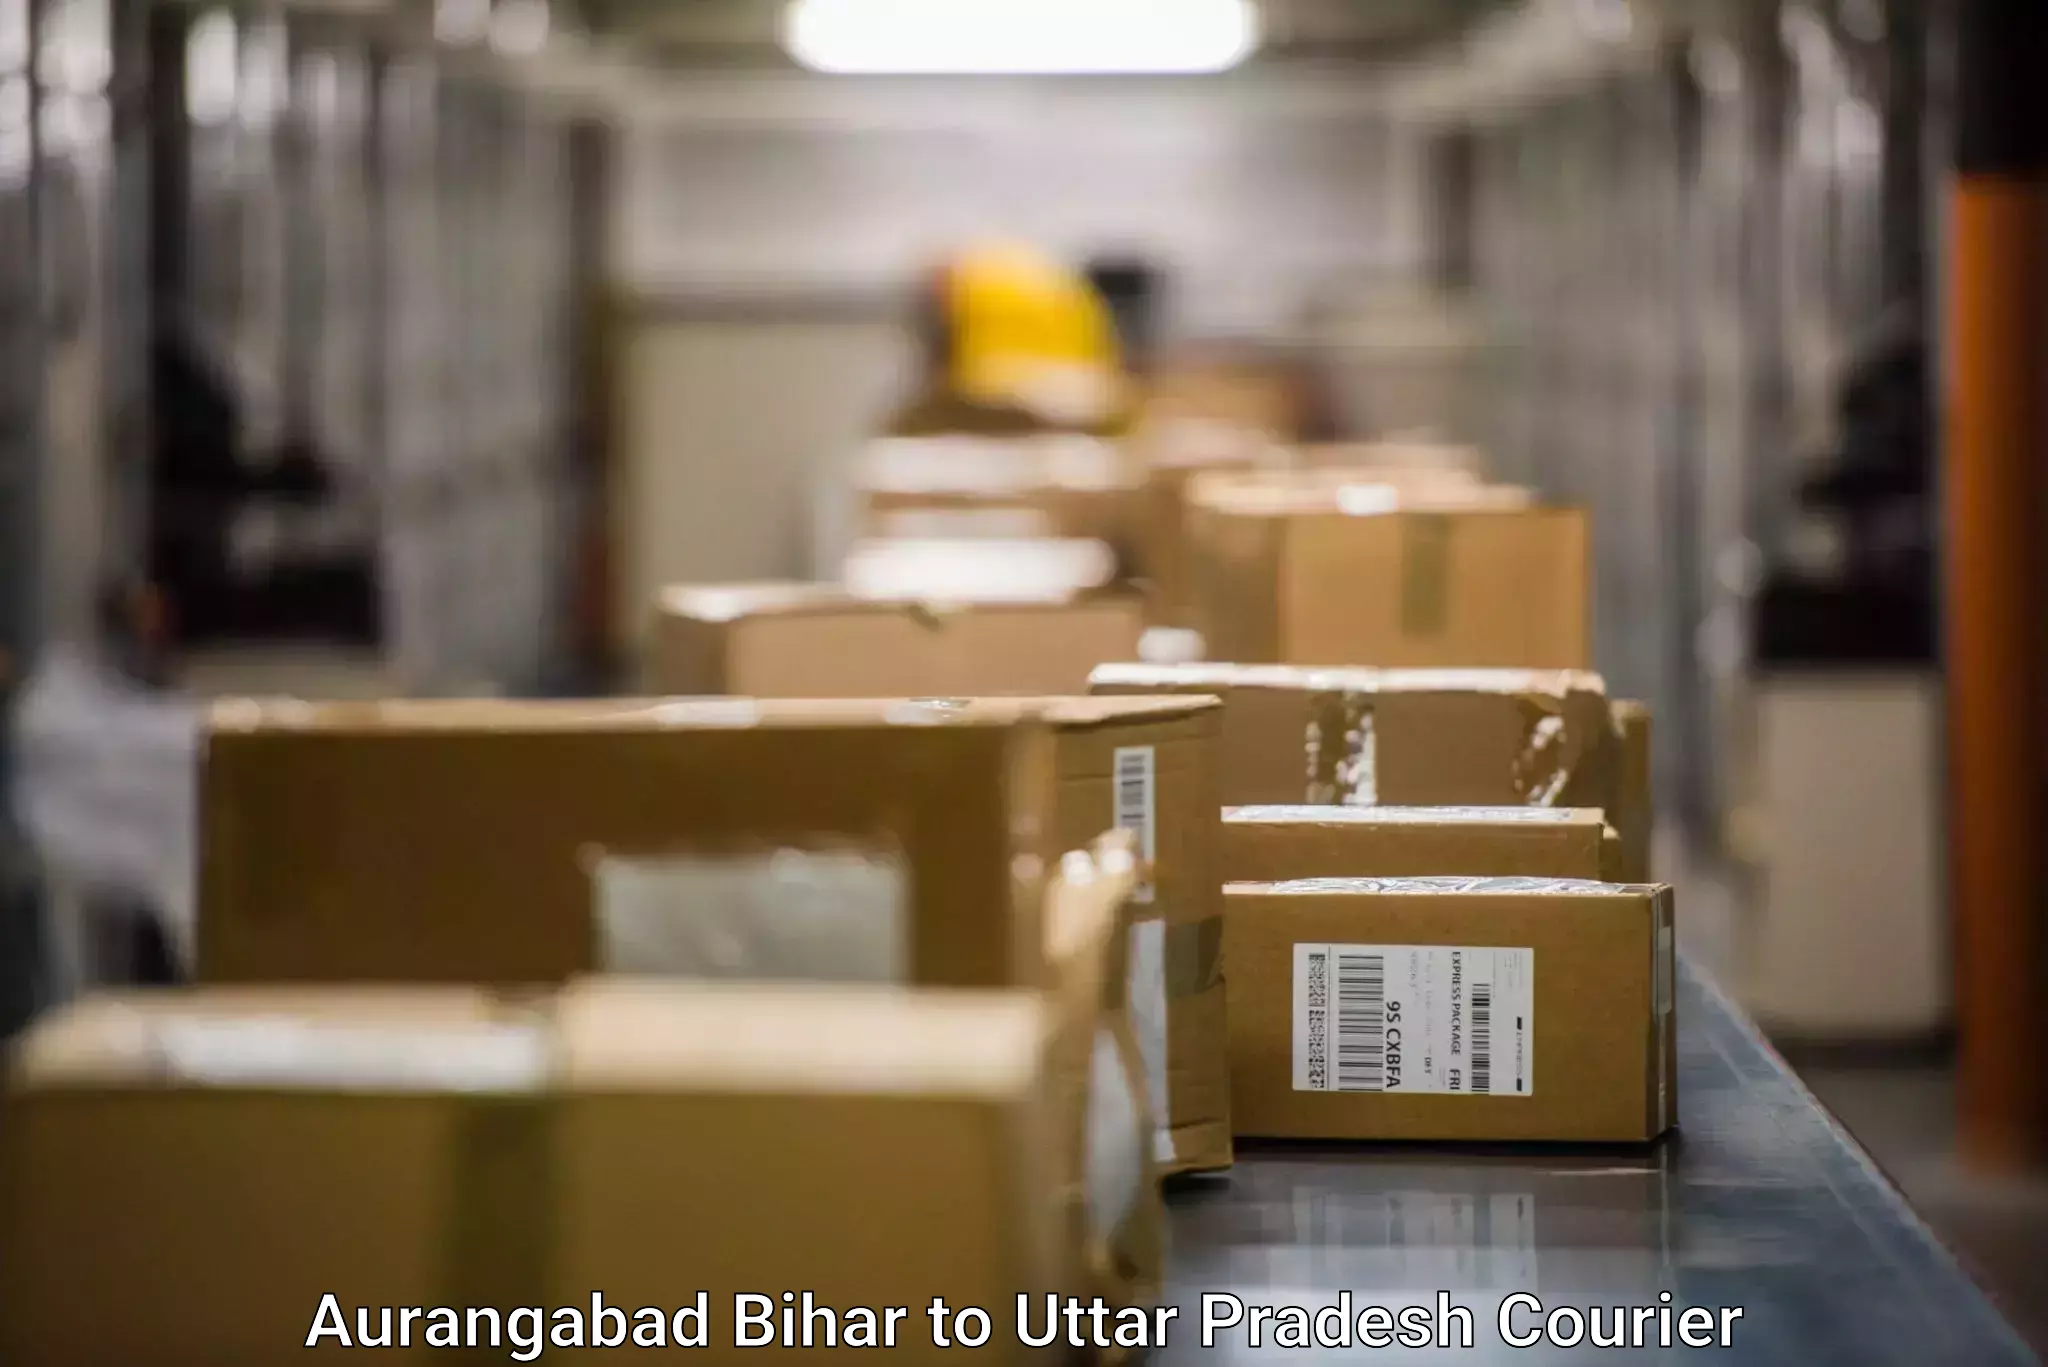 Smart parcel solutions in Aurangabad Bihar to Allahabad